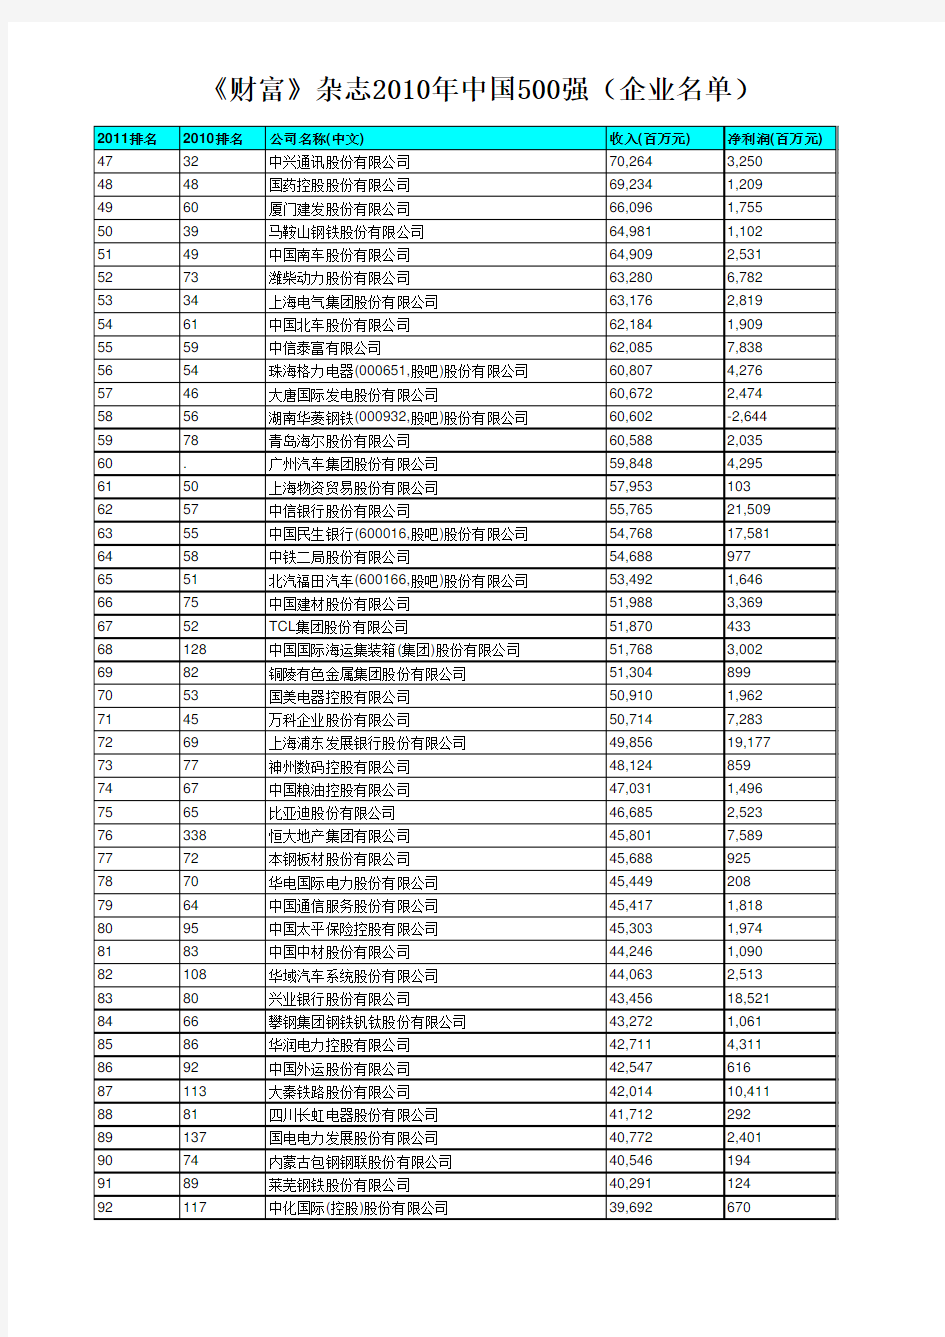 《财富》杂志2010年中国500强(企业名单)